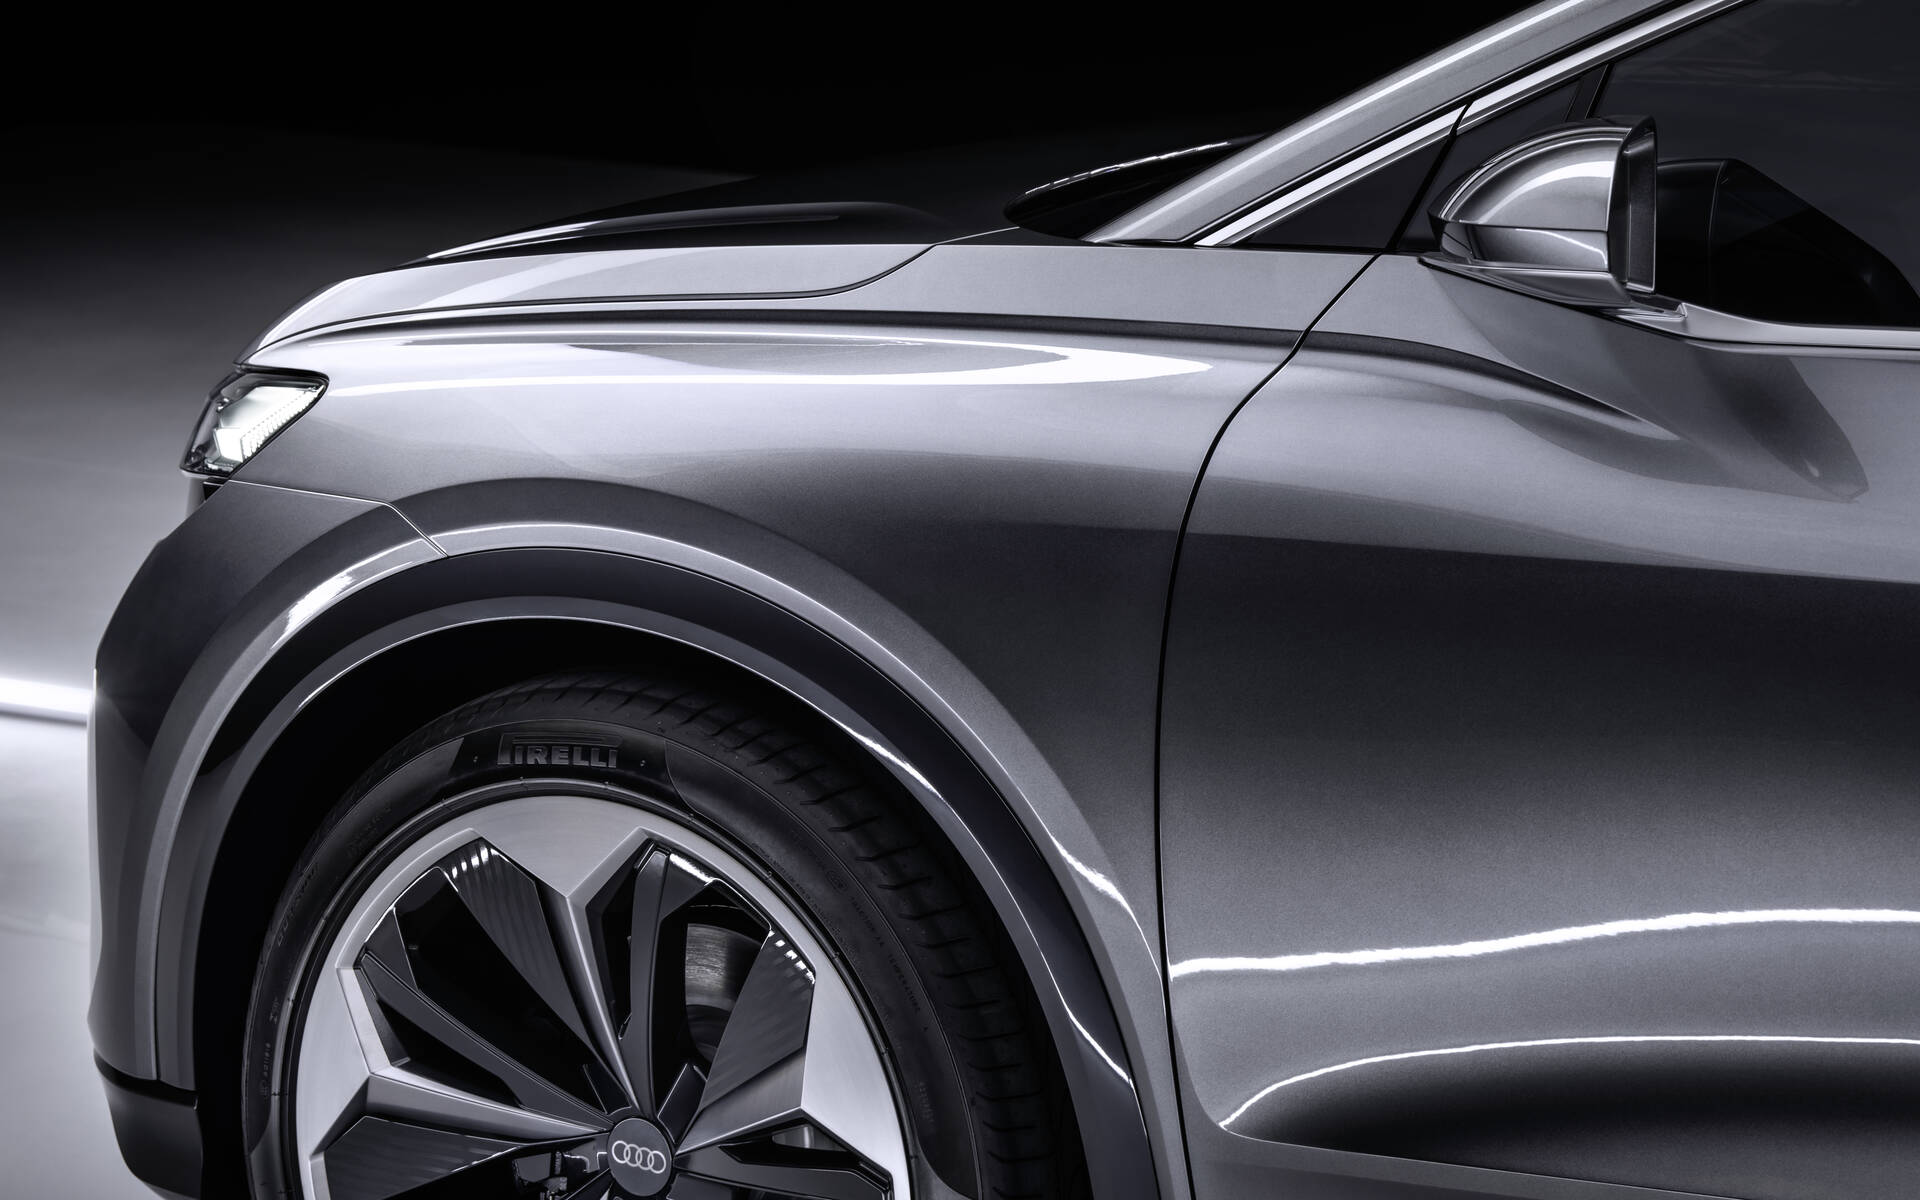 <p>Audi Q4 Sportback e-tron concept</p>